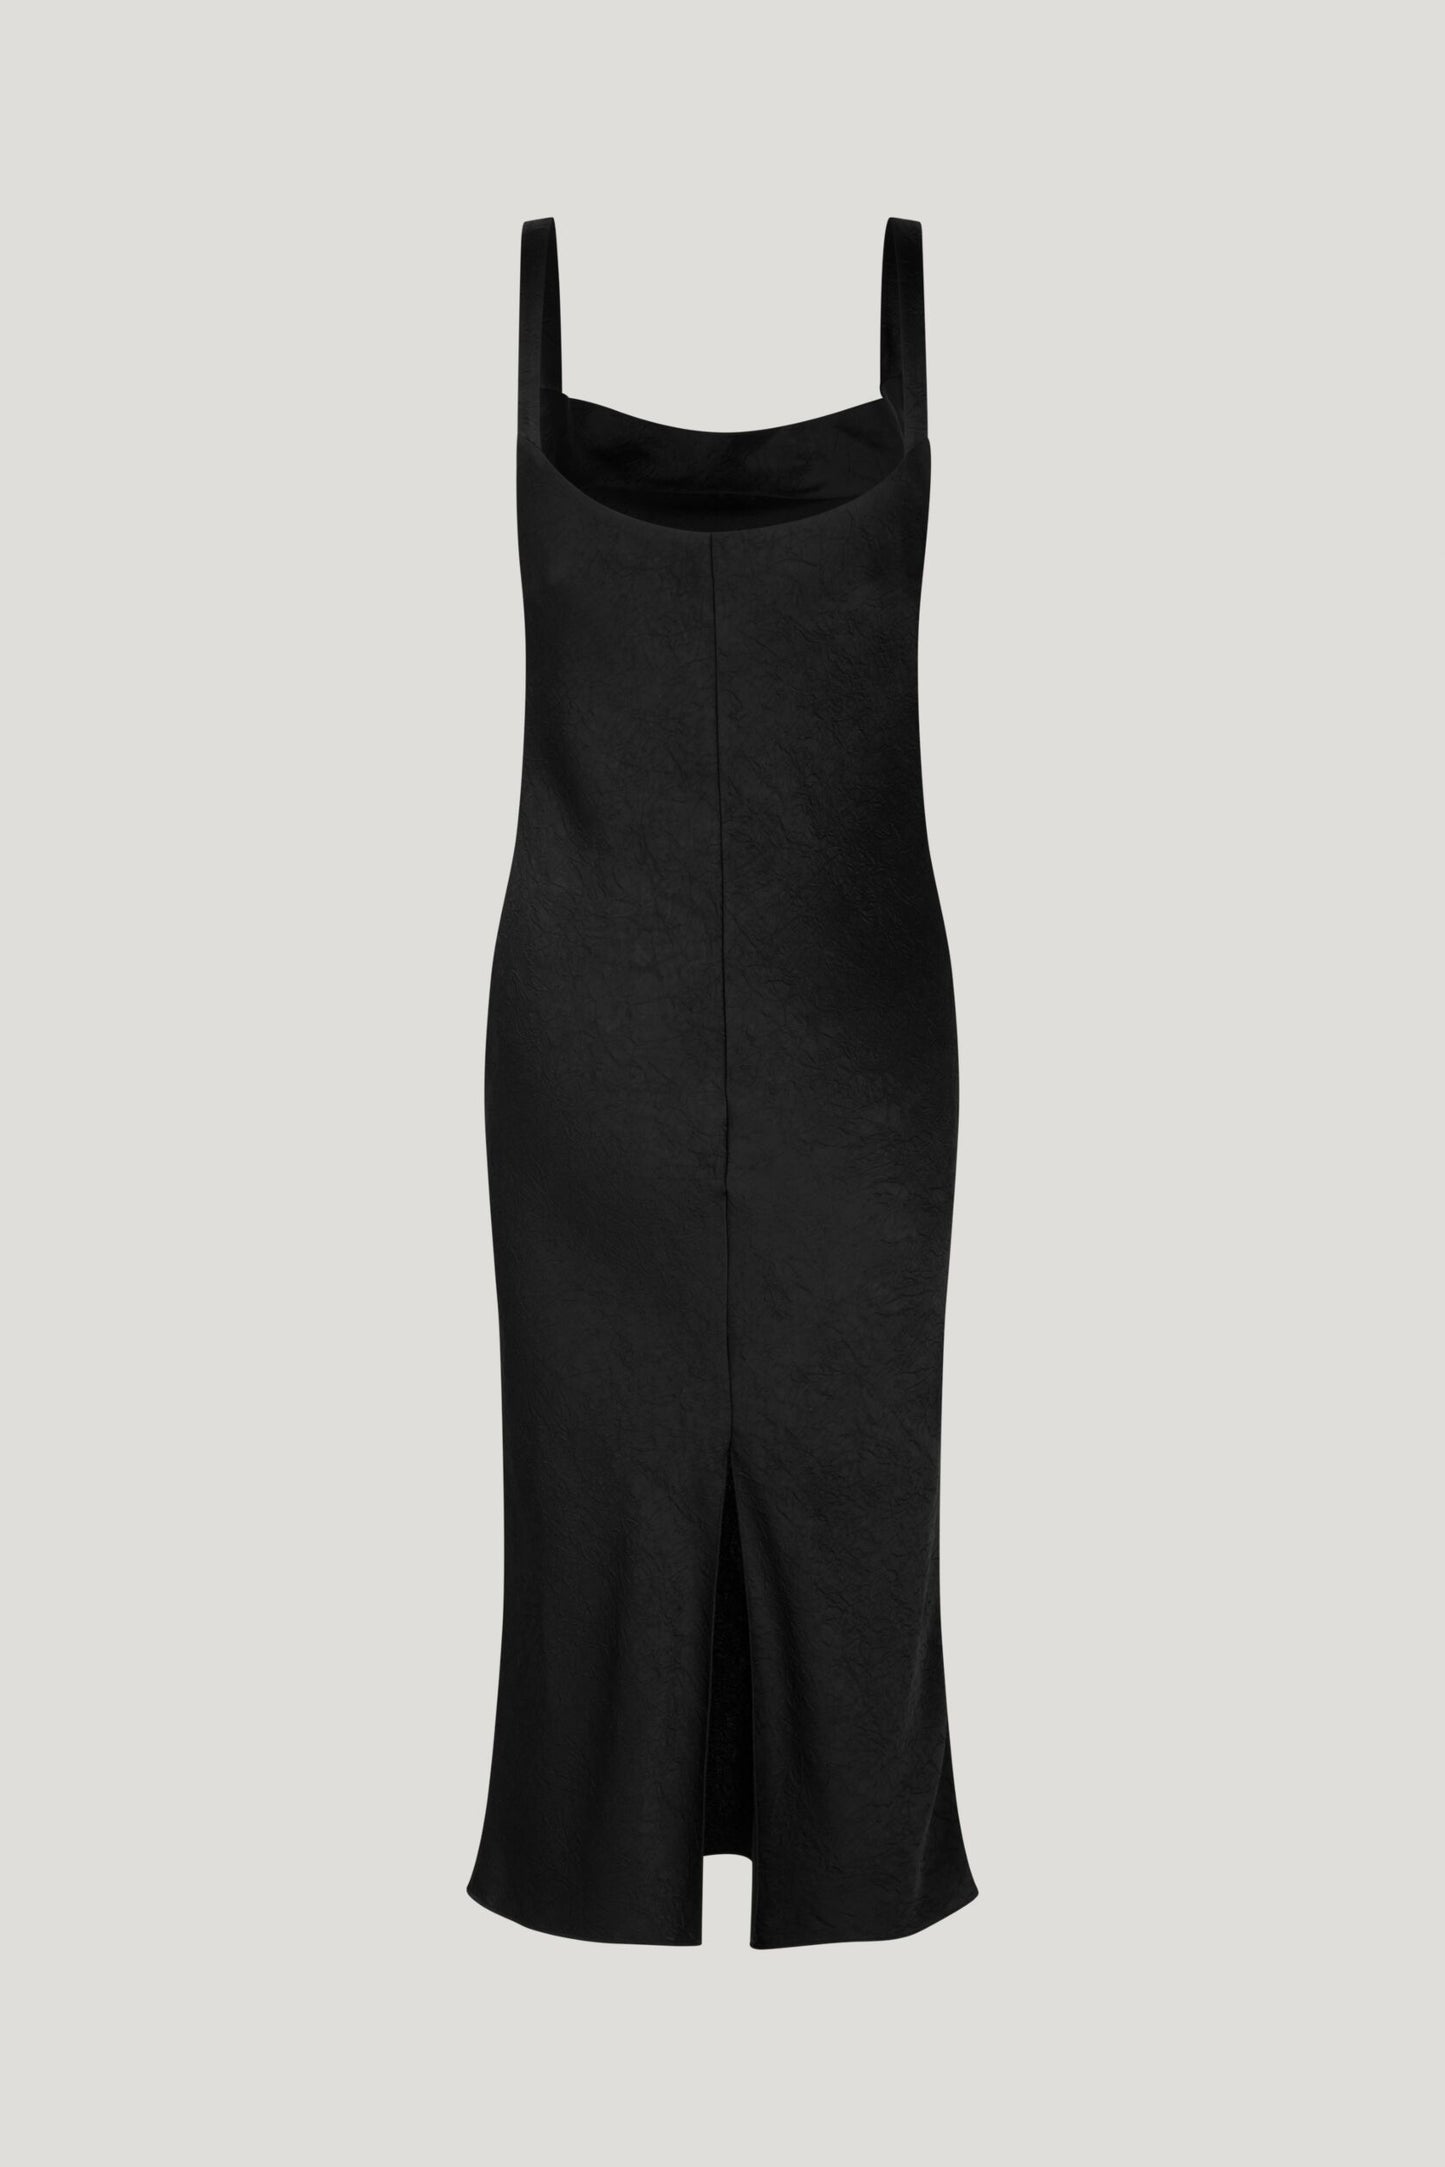 Agamora Dress - Black by Baum und Pferdgarten